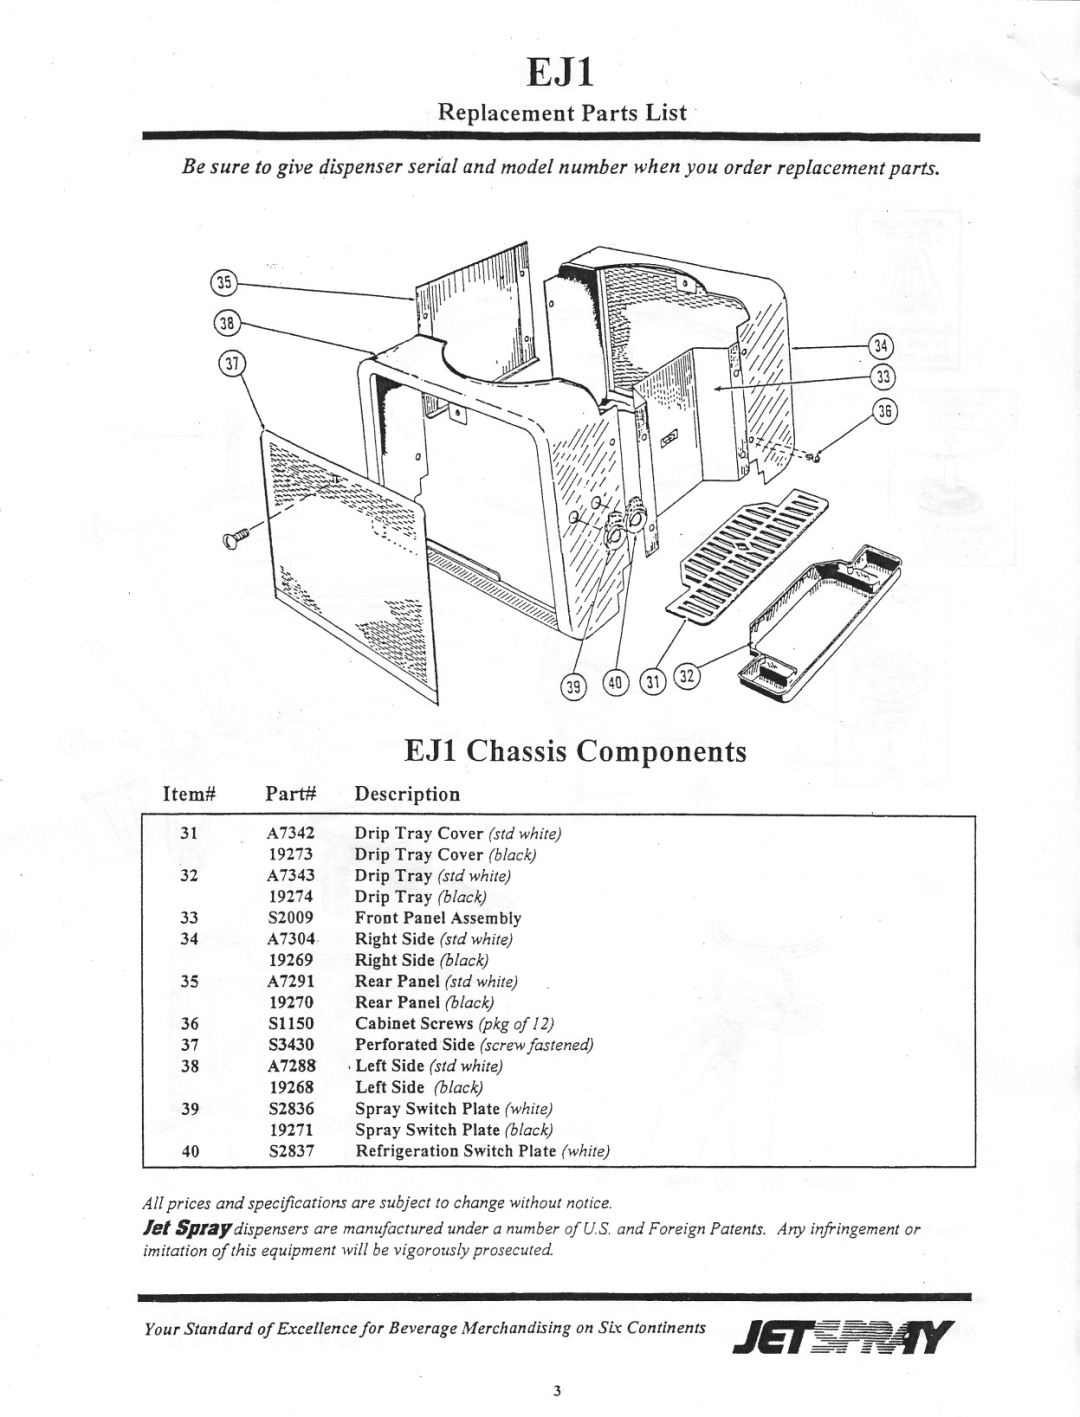 Cornelius S2828 Item# Part#, Description, 35A7291, Drip Tray std white, EJl Chassis Components, Replacement Parts List 